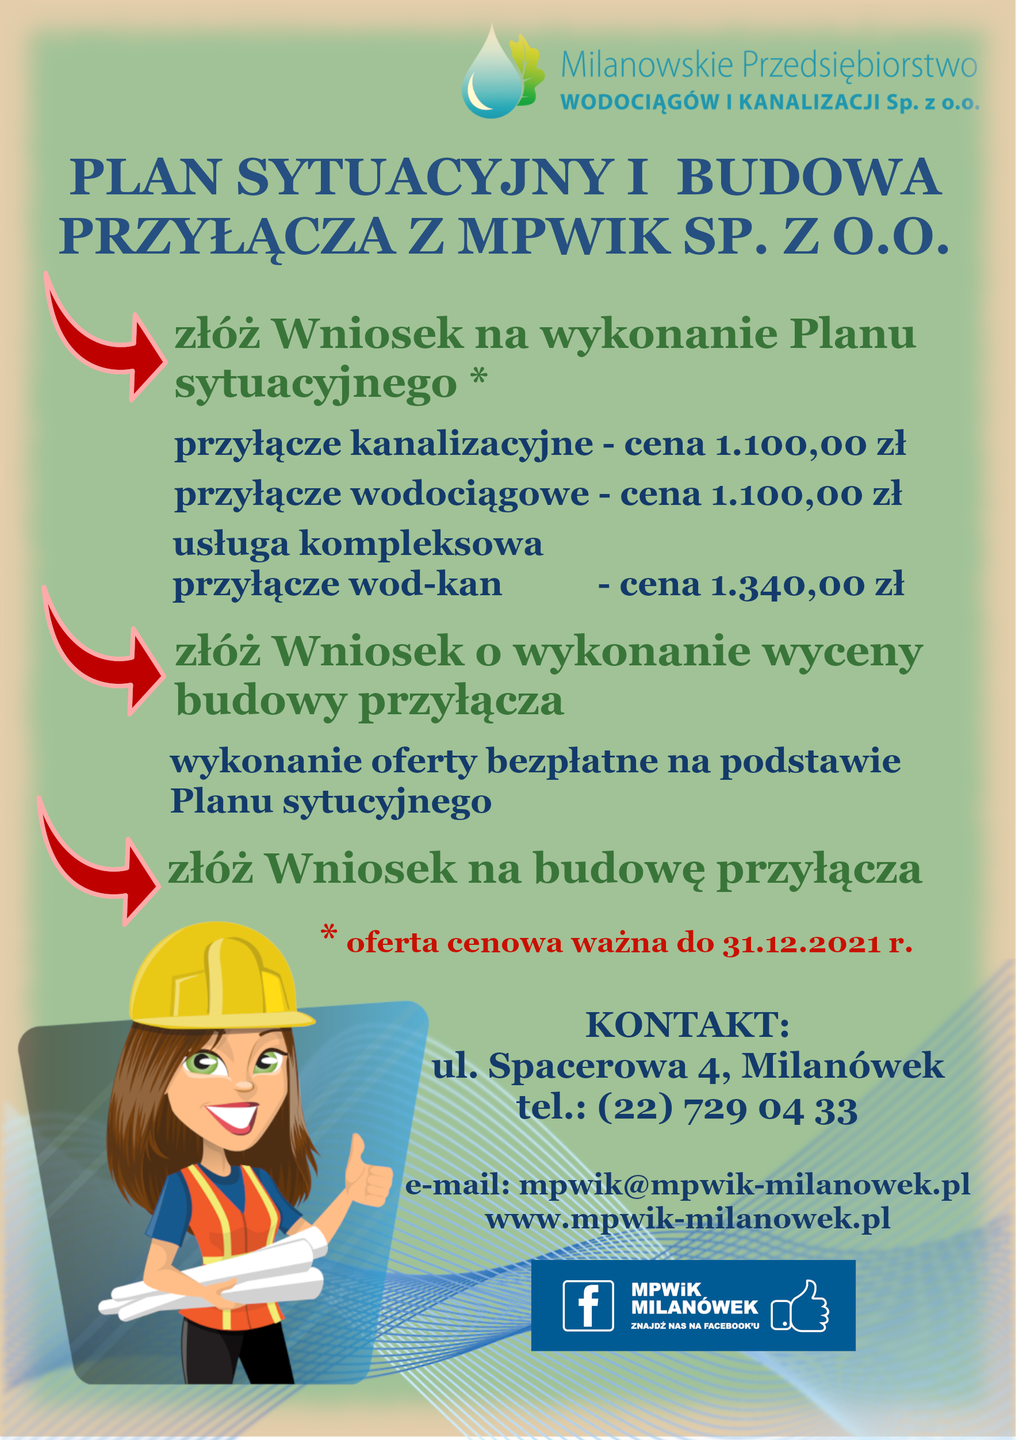 Plan sytuacyjny i budowa przyłącza z MPWiK sp.z.o.o